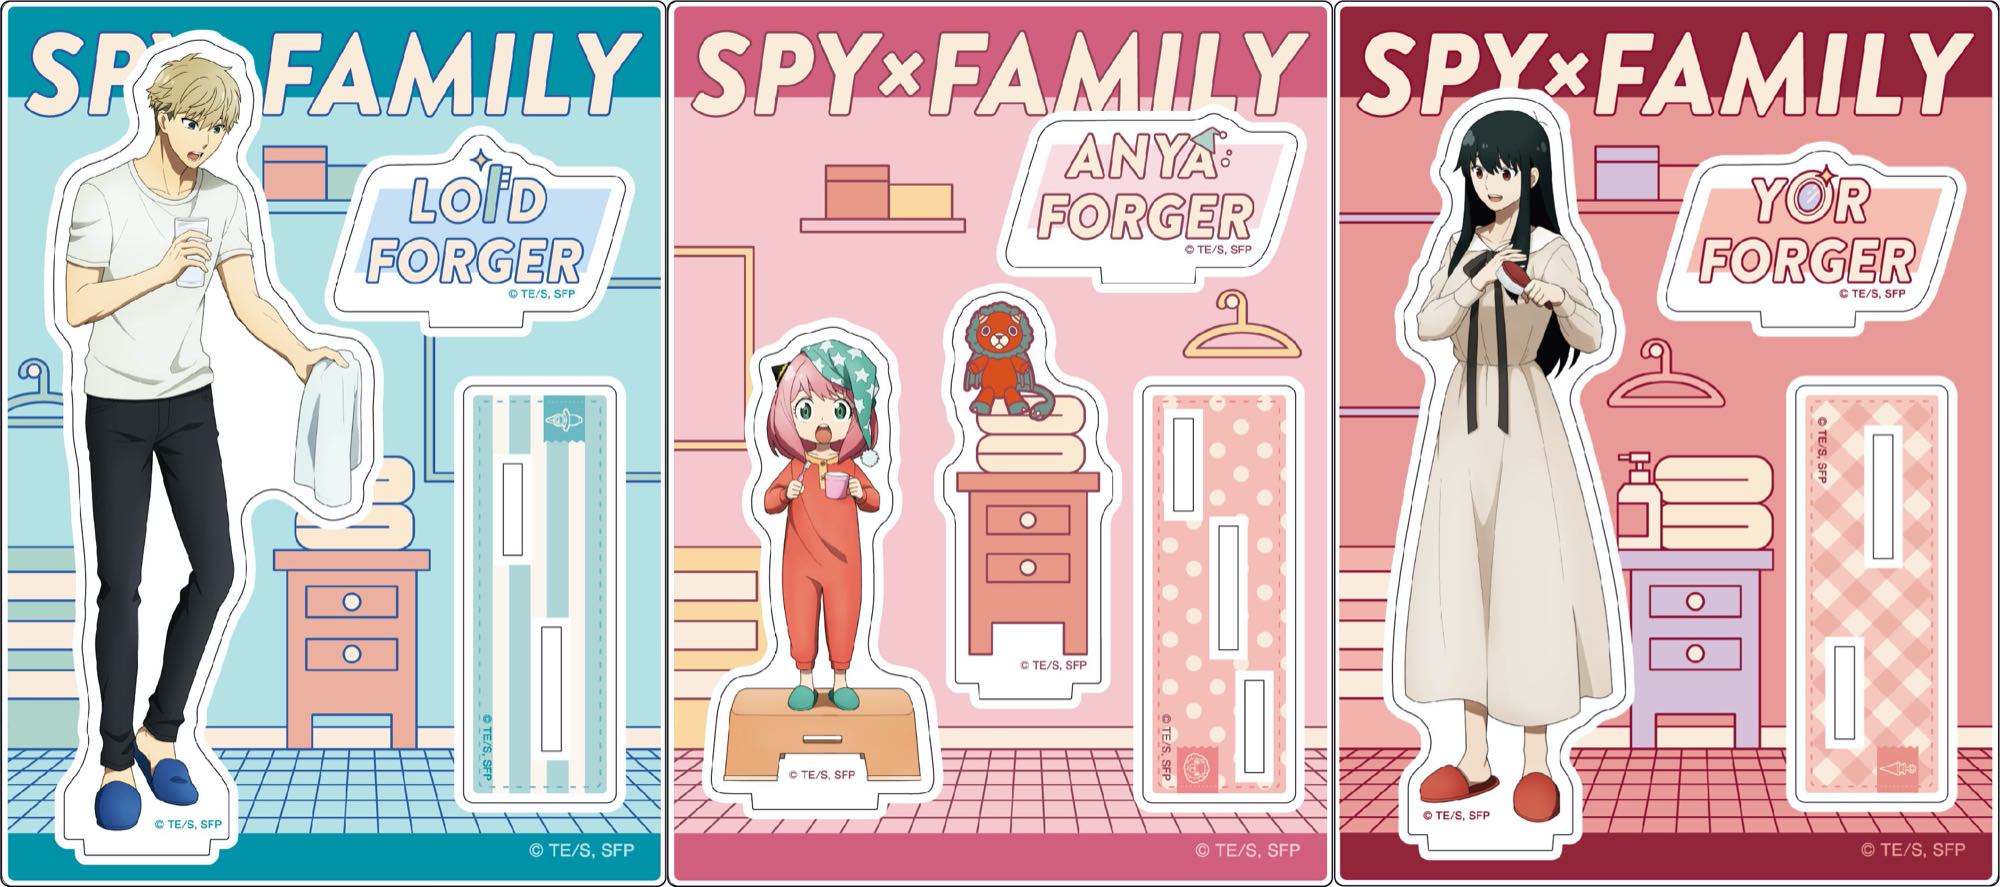 スパイファミリー 家族3人で朝の支度をする描き下ろしグッズ 4月発売!